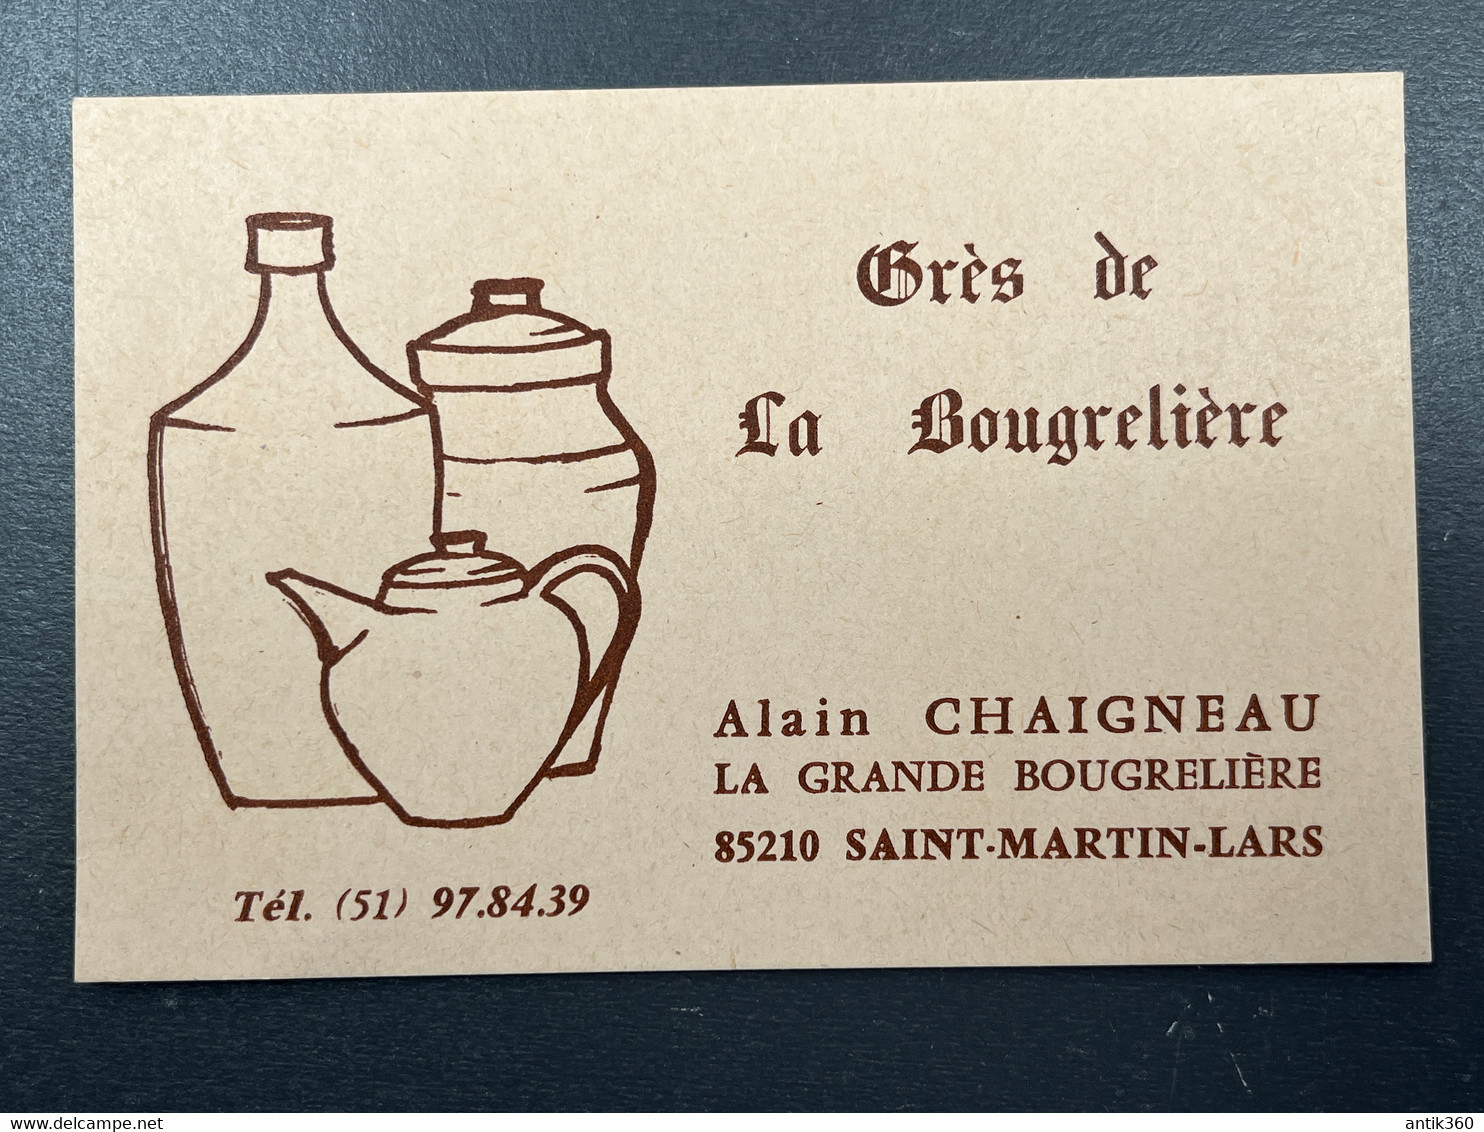 Carte De Visite Ancienne Grès De La Bougrelière Alain Chaigneau 85 Saint Martin Lars Vendée Céramique Poterie - Visiting Cards